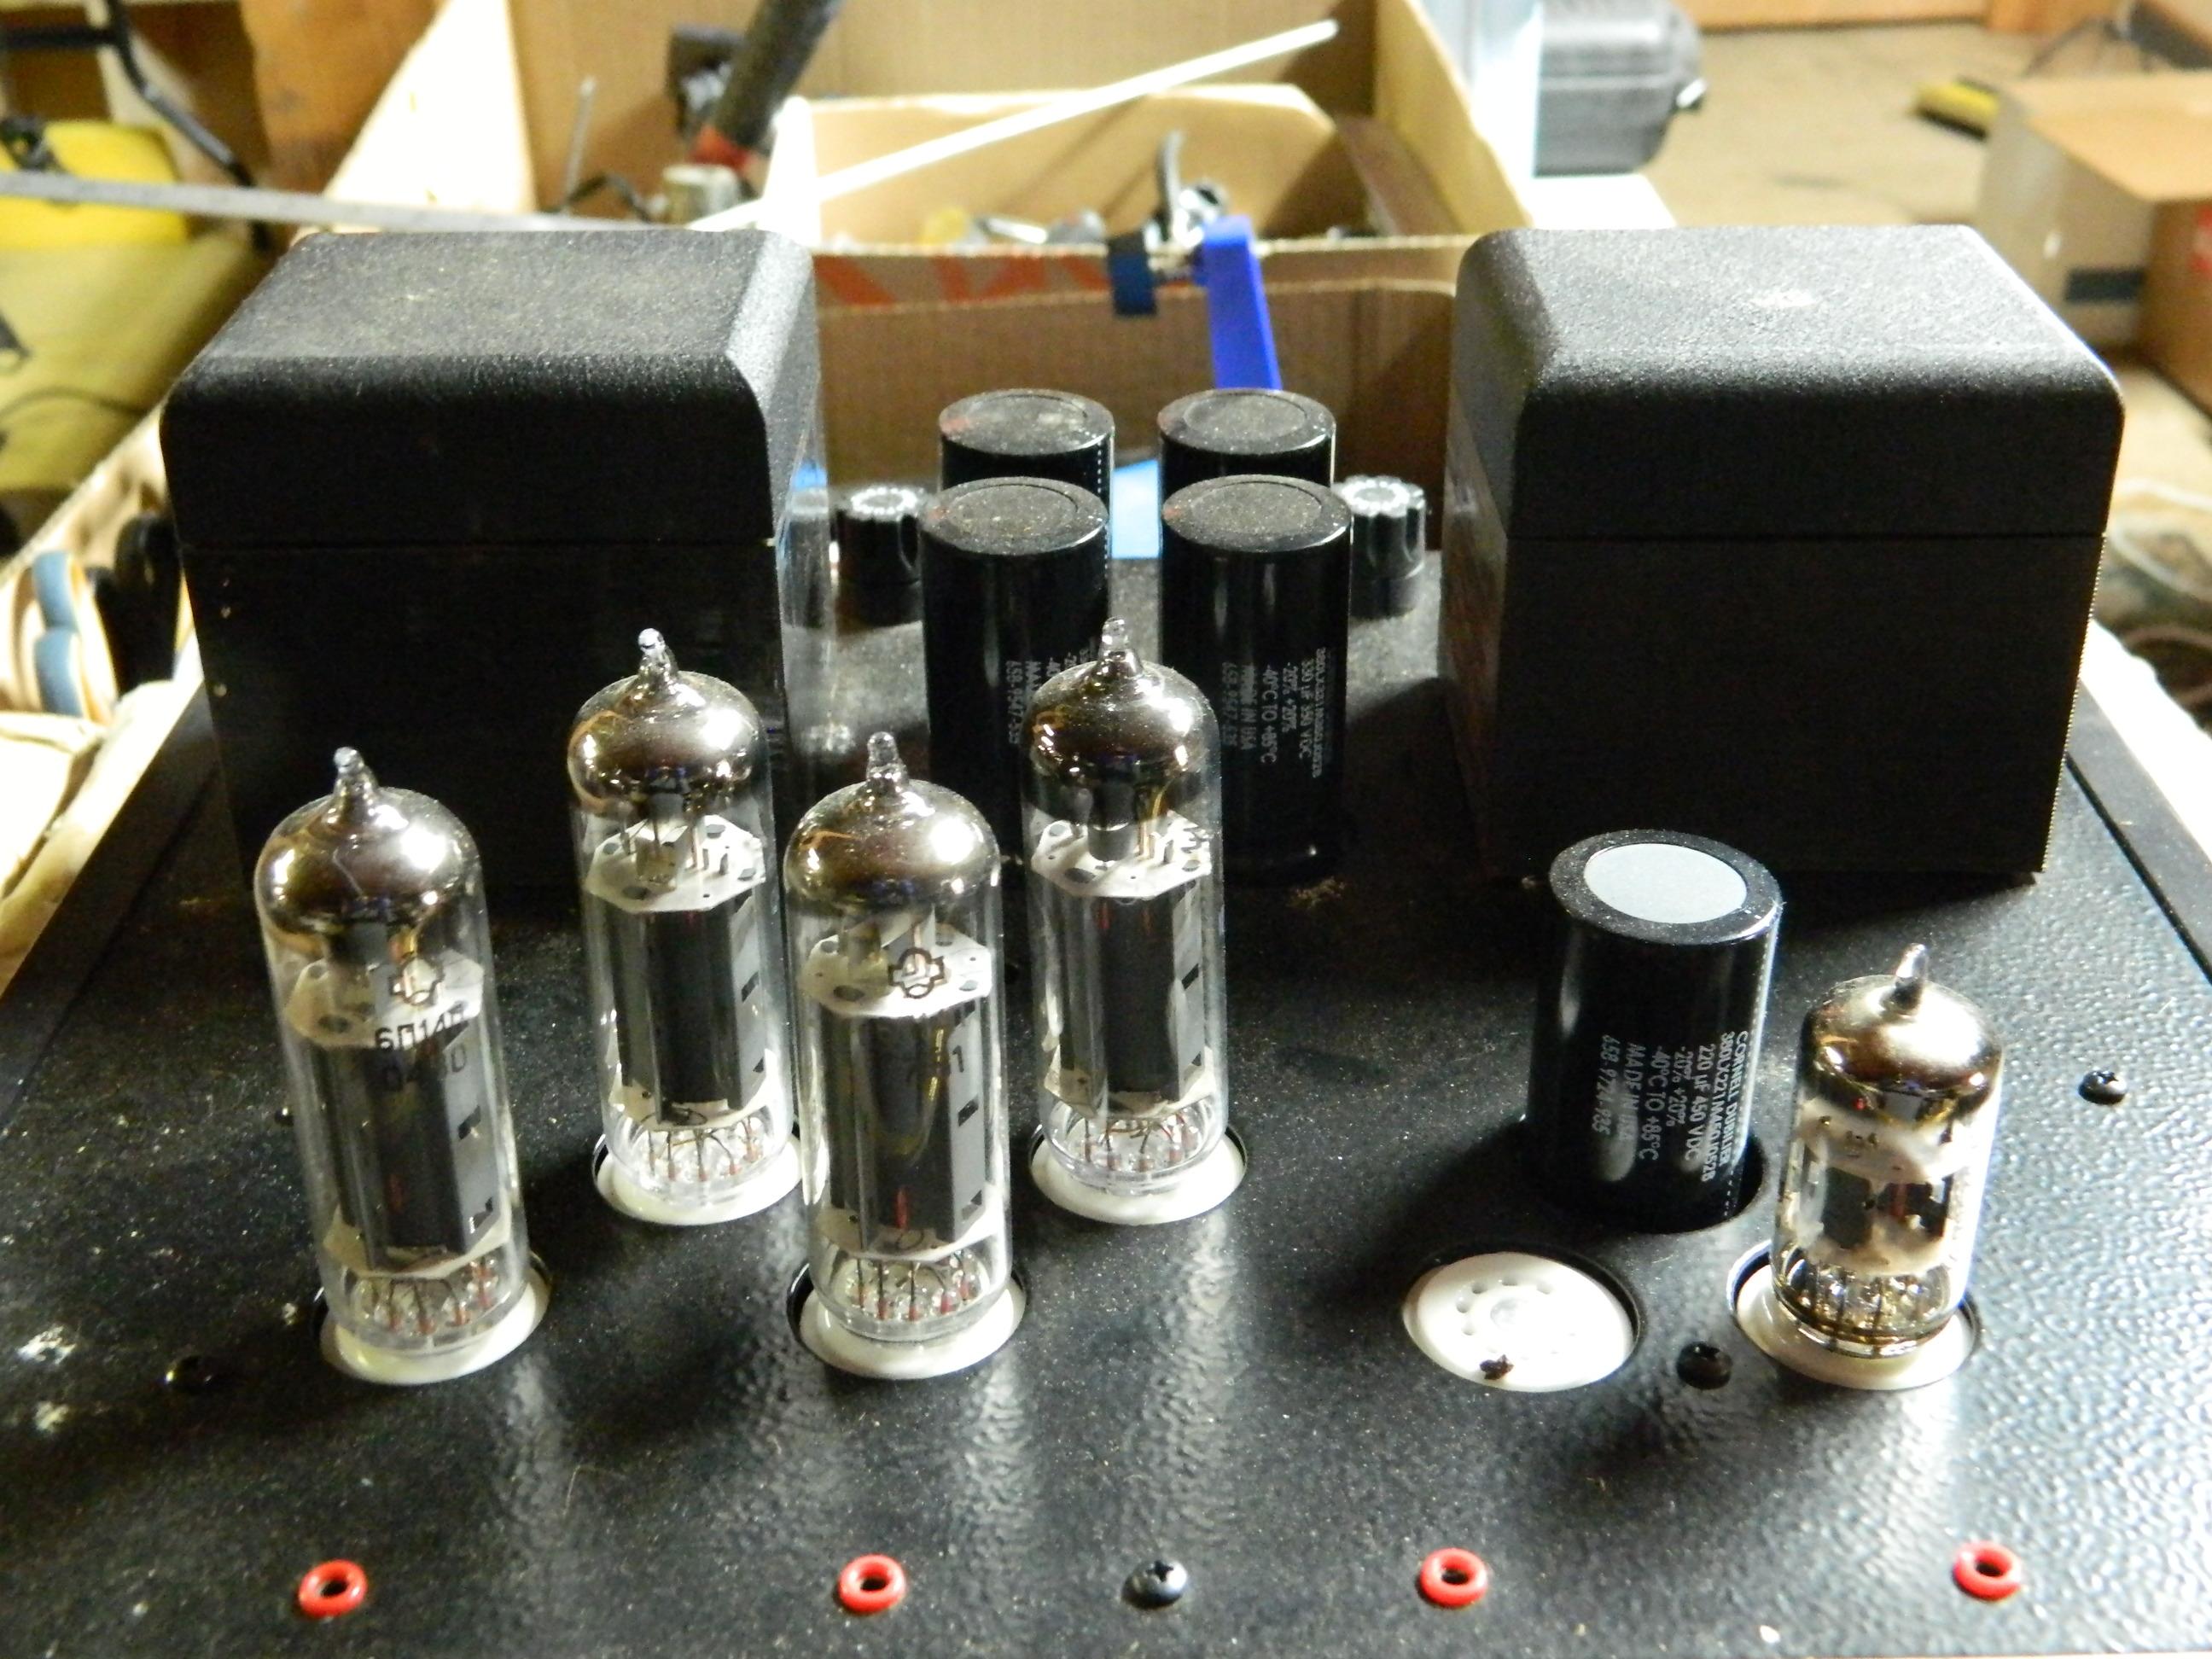 Manley Laboratories 50-Watt Monoblock Amplifier Model 50